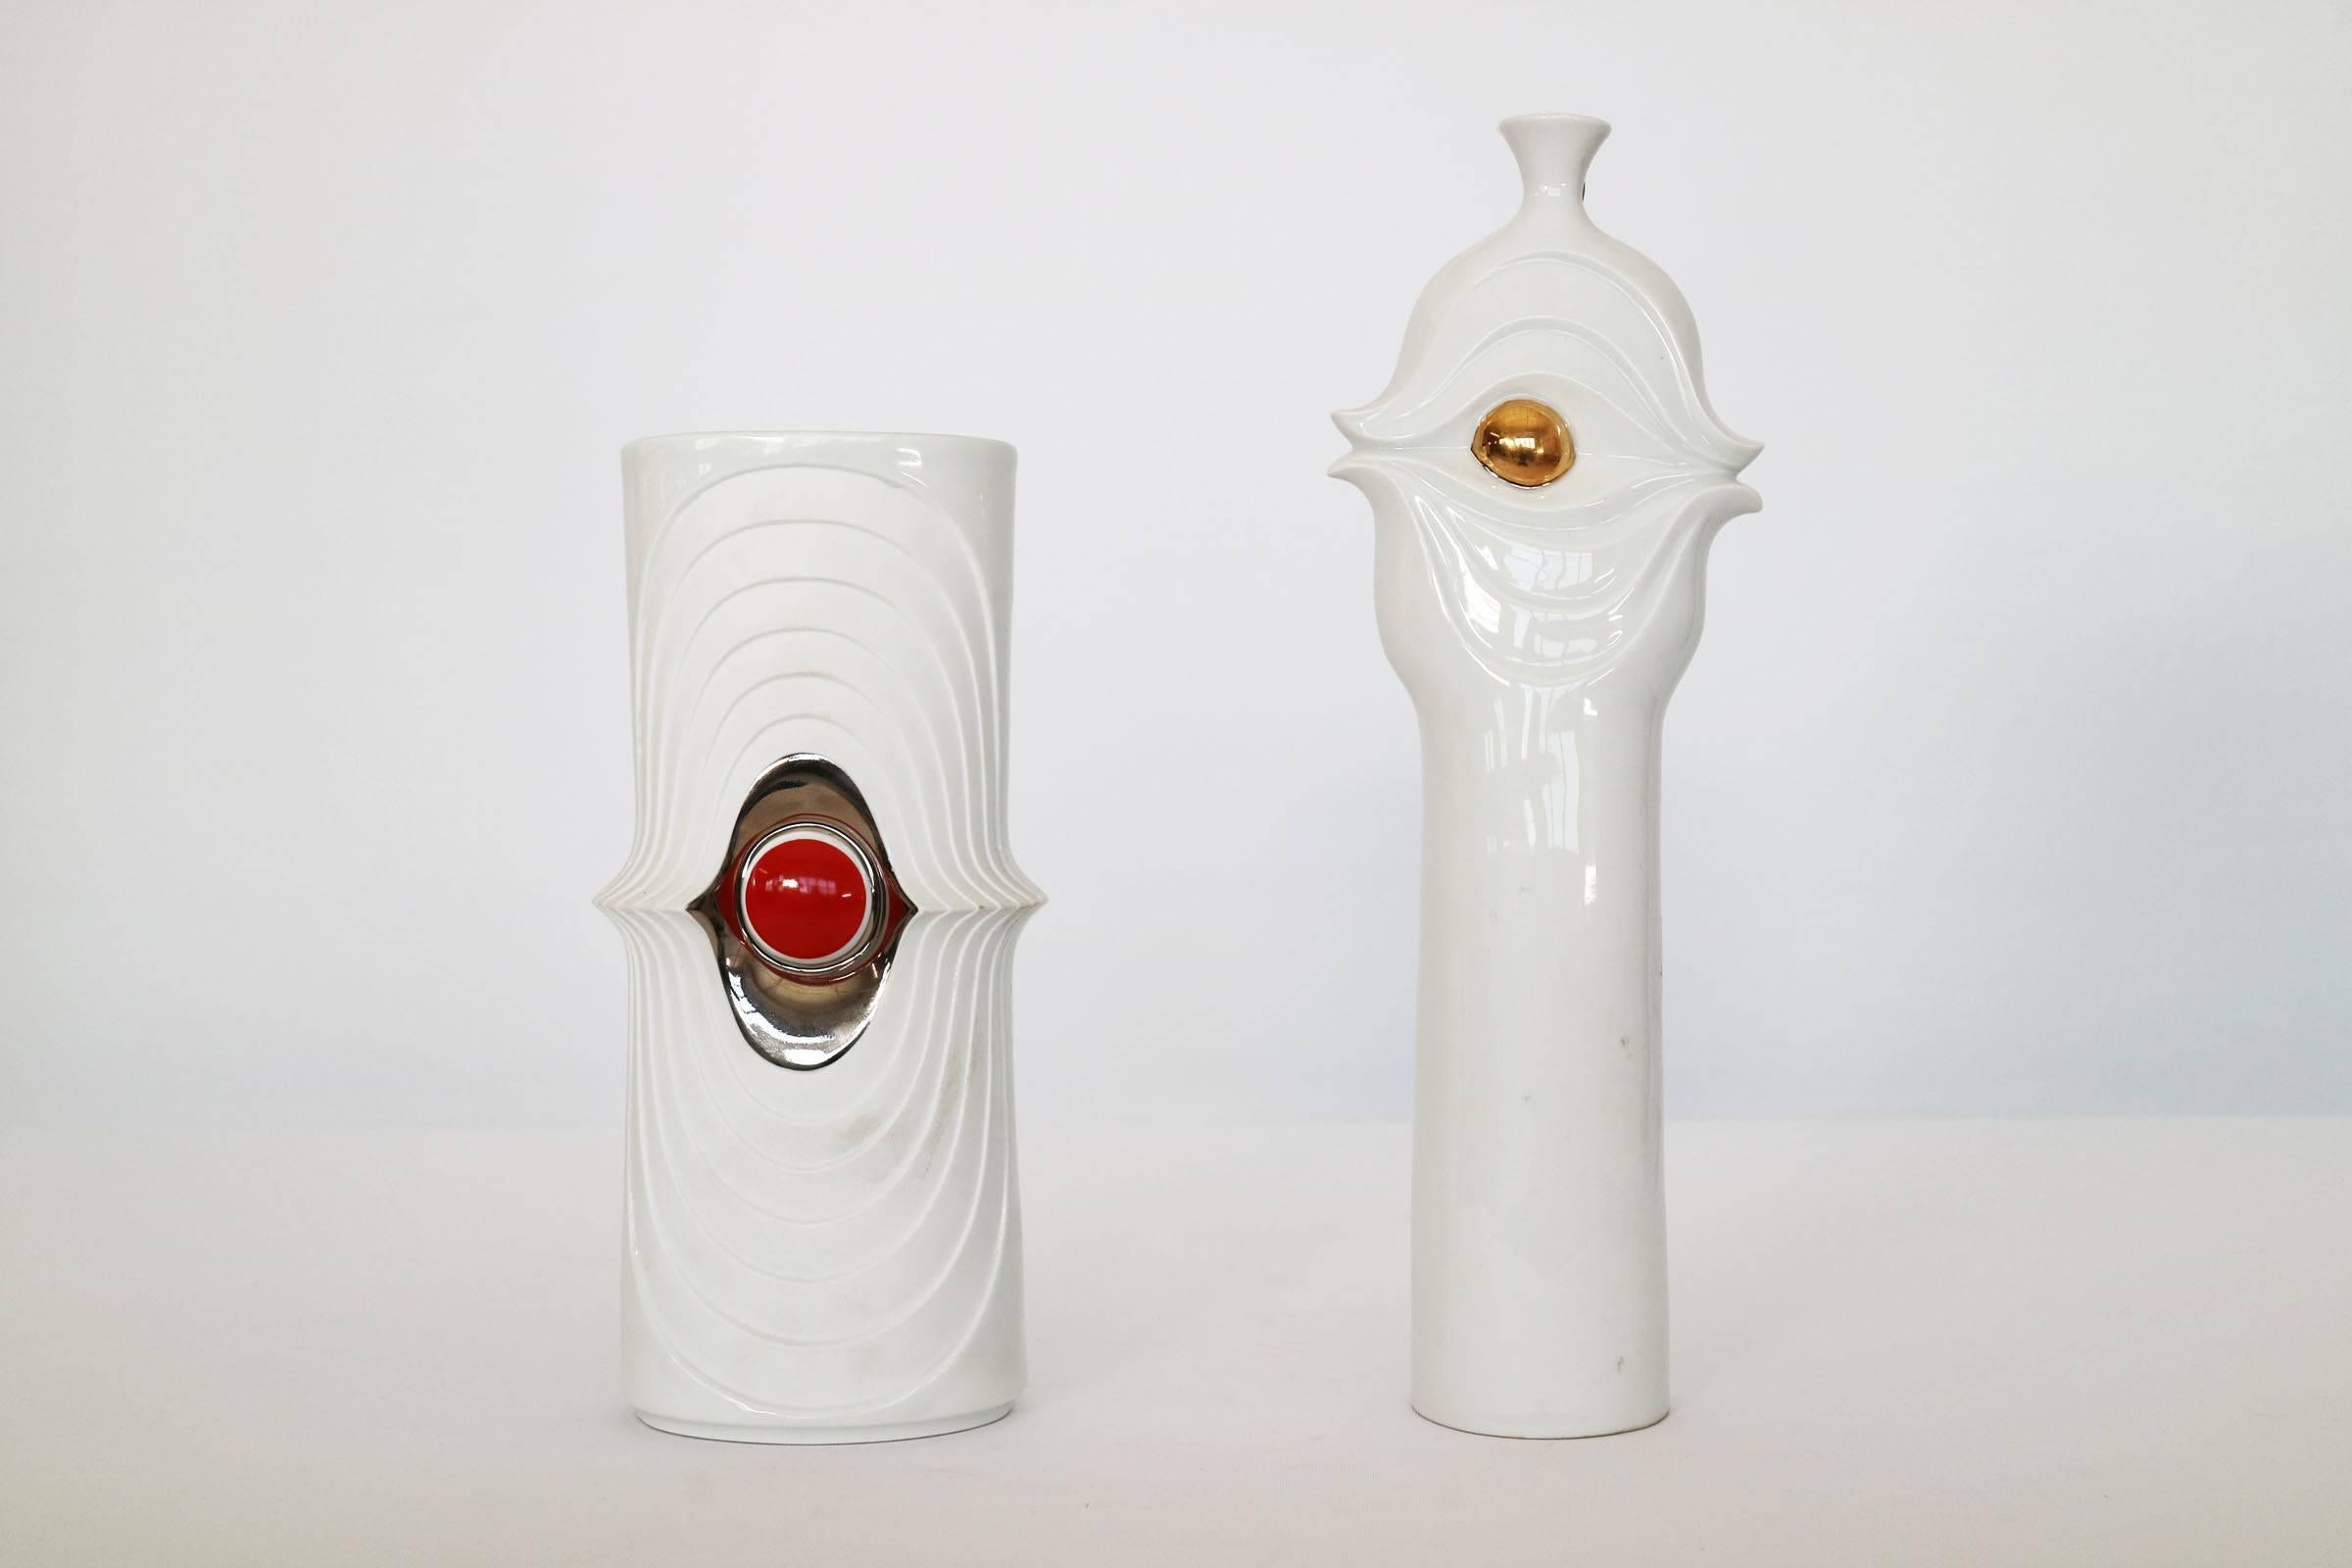 Rosenthal, weiß und goldfarben Vase.
Abgebildet und separat erhältlich, passende Vase aus der gleichen Serie.